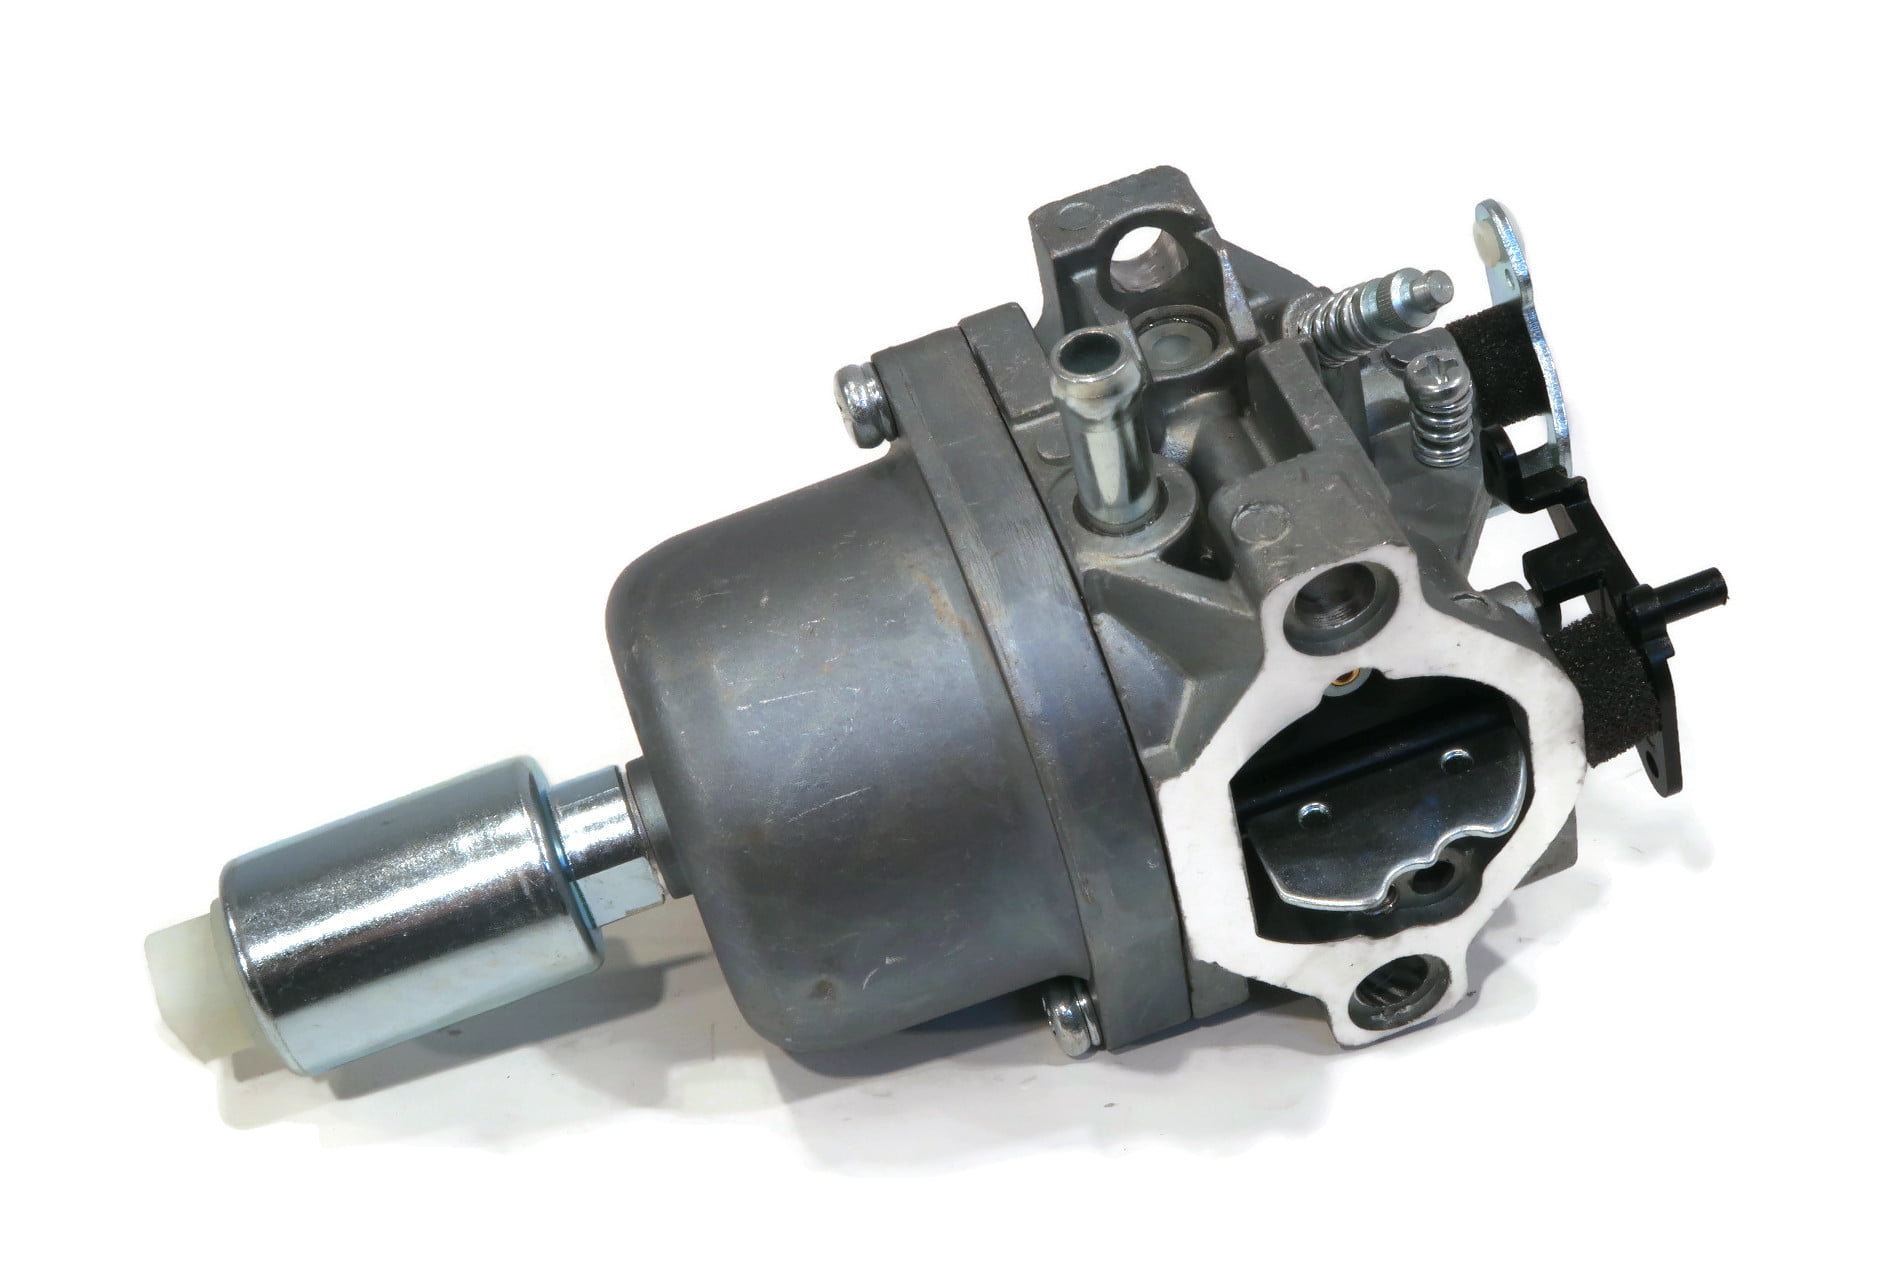 Carburetor for Briggs Stratton 31C707 31C777 31D707 31D777 31E577 31E607 Engine 